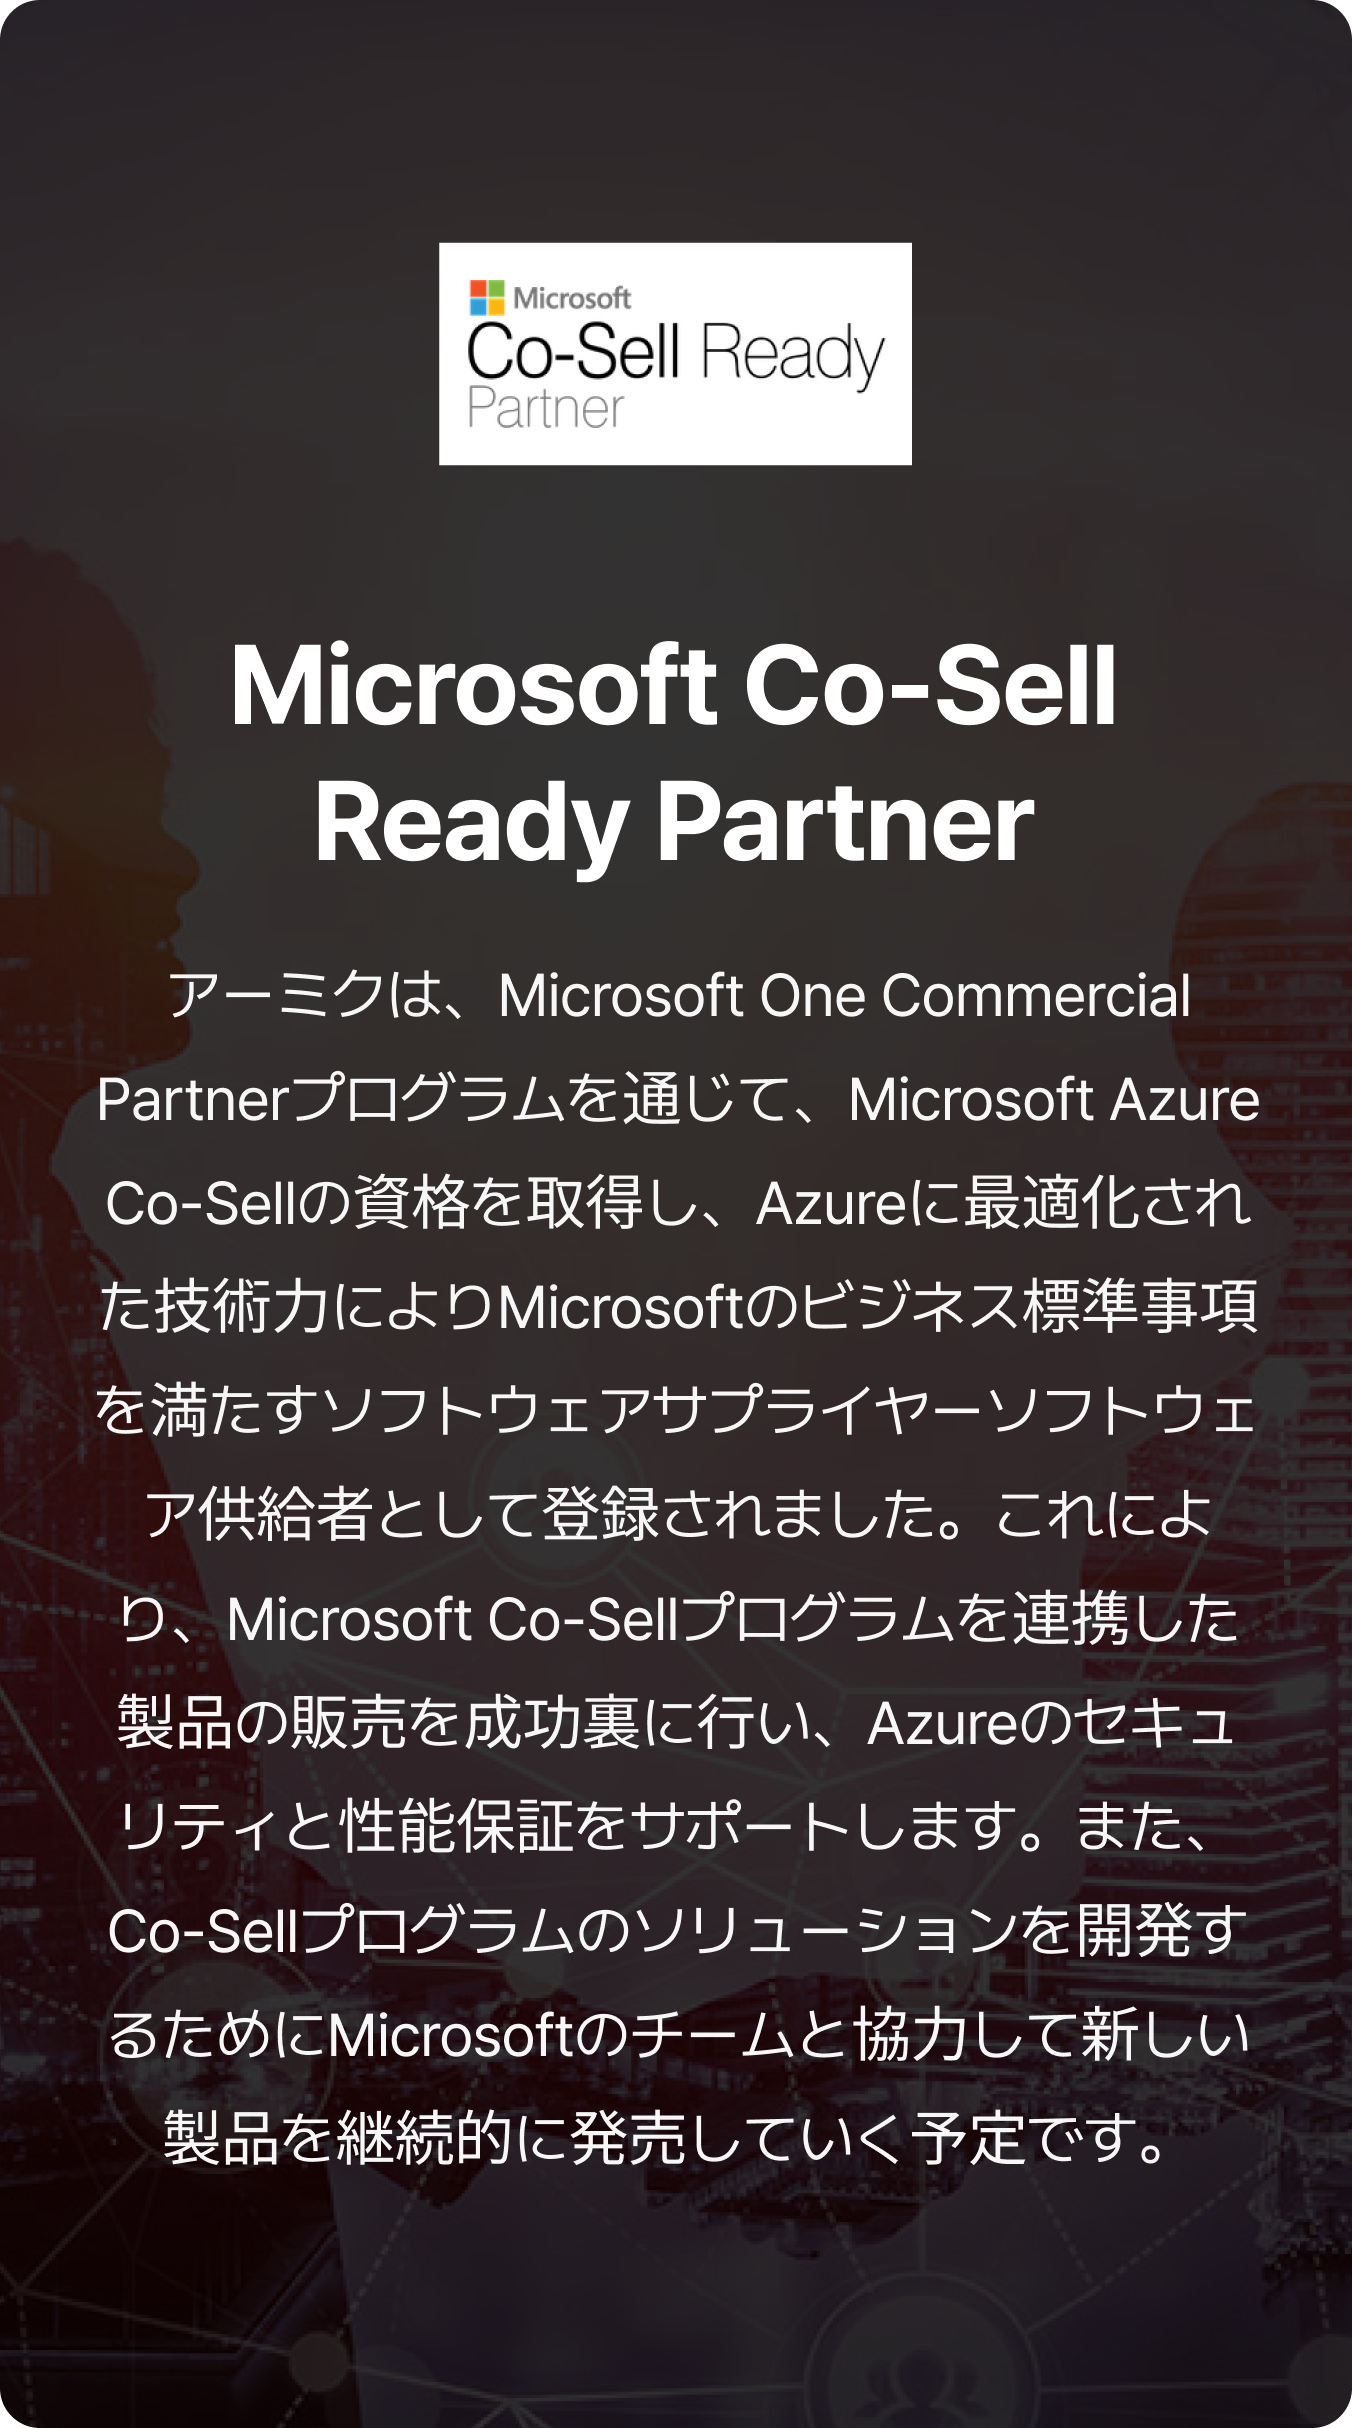 アーミクは、Microsoft One Commercial Partnerプログラムを通じて、Microsoft Azure Co-Sellの資格を取得し、Azureに最適化された技術力によりMicrosoftのビジネス標準事項を満たすソフトウェアサプライヤーソフトウェア供給者として登録されました。これにより、Microsoft Co-Sellプログラムを連携した製品の販売を成功裏に行い、Azureのセキュリティと性能保証をサポートします。また、Co-Sellプログラムのソリューションを開発するためにMicrosoftのチームと協力して新しい製品を継続的に発売していく予定です。